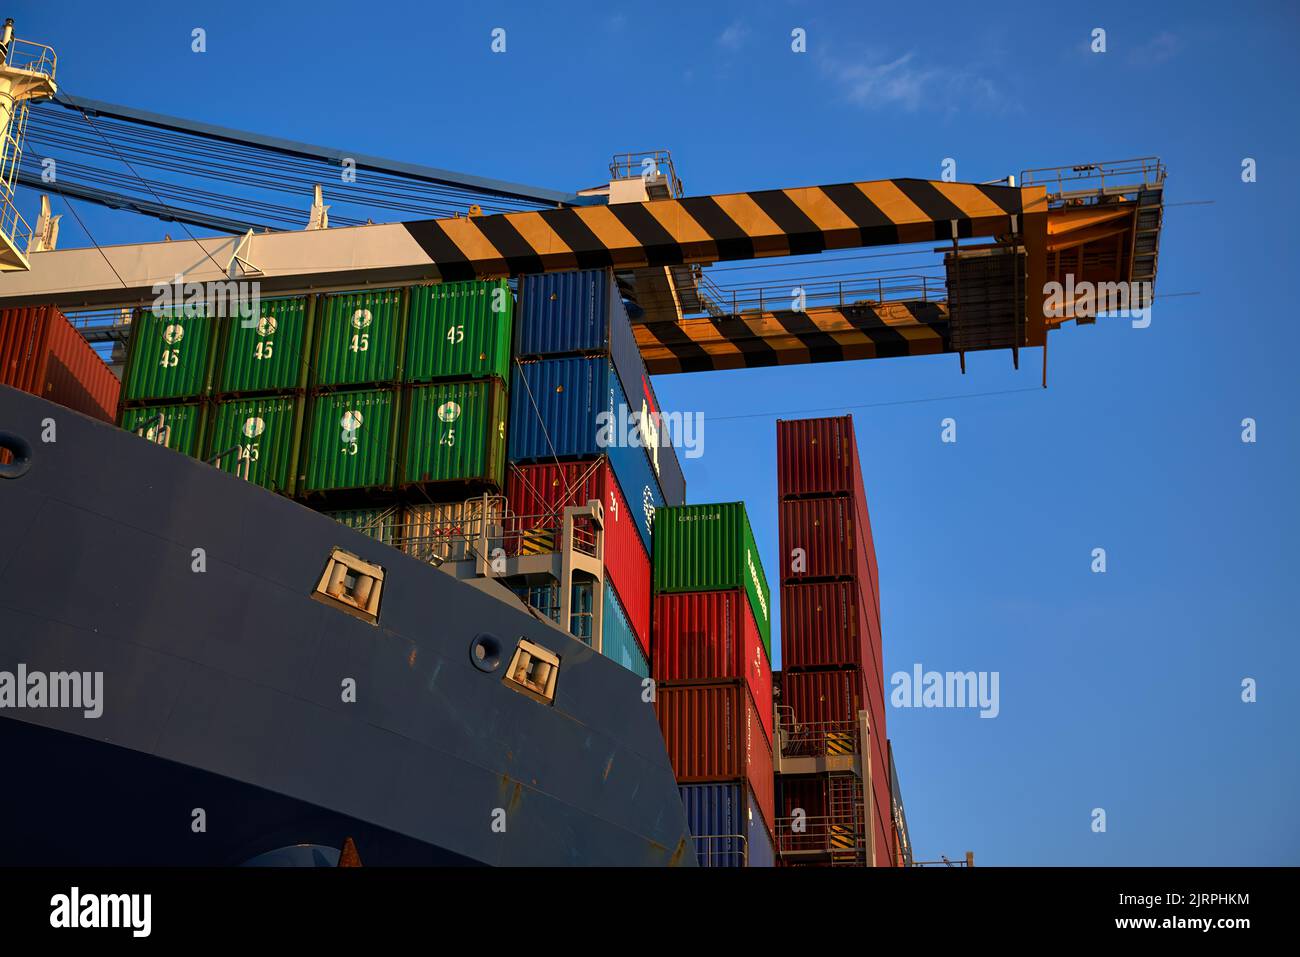 Odessa, Ucraina SIRCA 2019: Impilamento dei contenitori sul ponte della nave. Carico di container in nave da carico con gru industriale al porto marittimo. Foto Stock